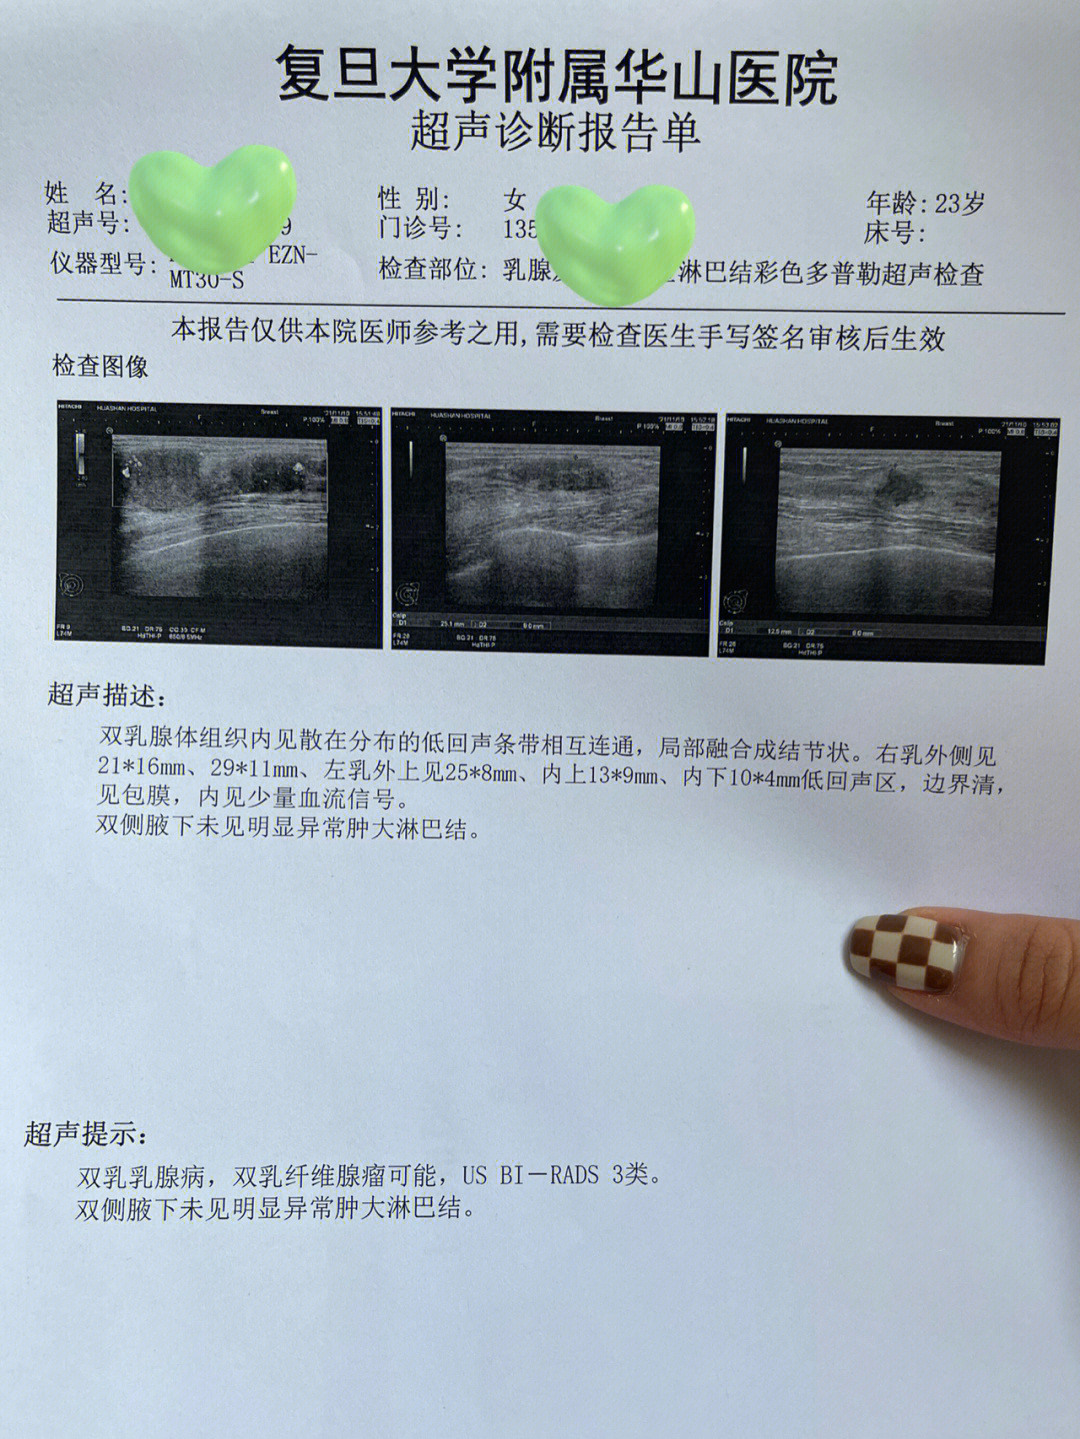 23岁双乳纤维瘤3类——华山医院蔡振鑫教授(上